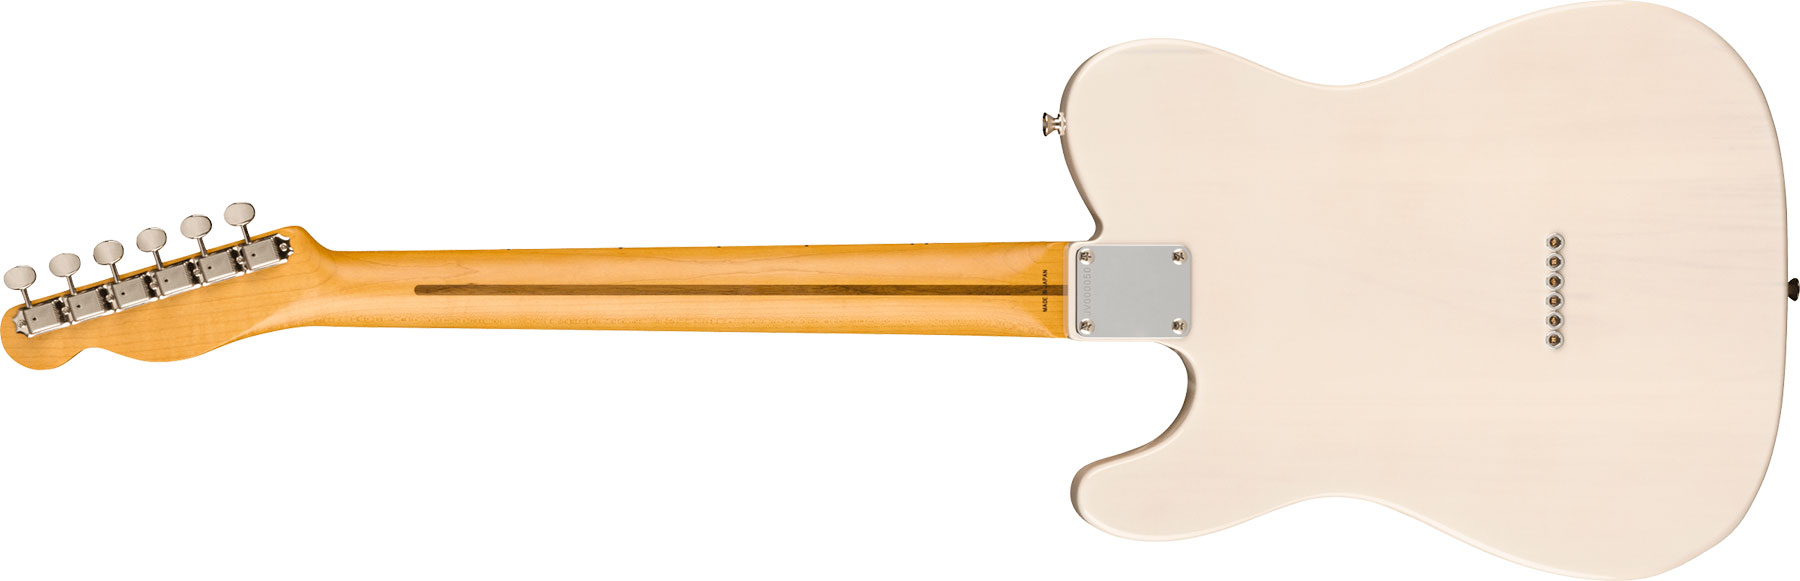 Fender Tele '50s Jv Modified Jap 2s Ht Mn - White Blonde - E-Gitarre in Teleform - Variation 1